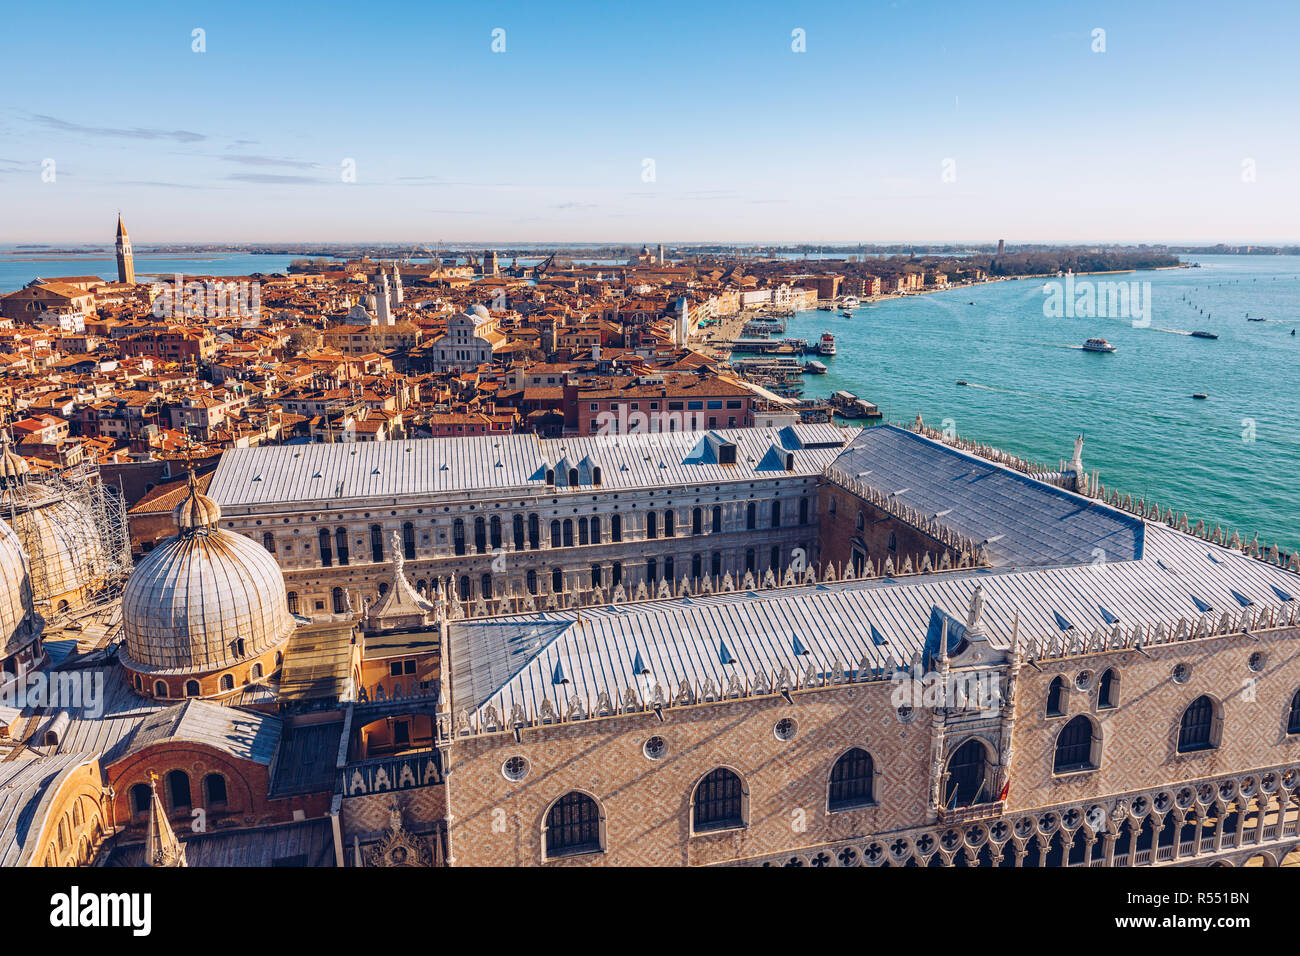 Vue aérienne vue panoramique de Venise avec des toits rouges, Veneto, Italie. Vue aérienne de la ville de Venise, Italie. Venise est une destination touristique populaire de l'Europe. Banque D'Images